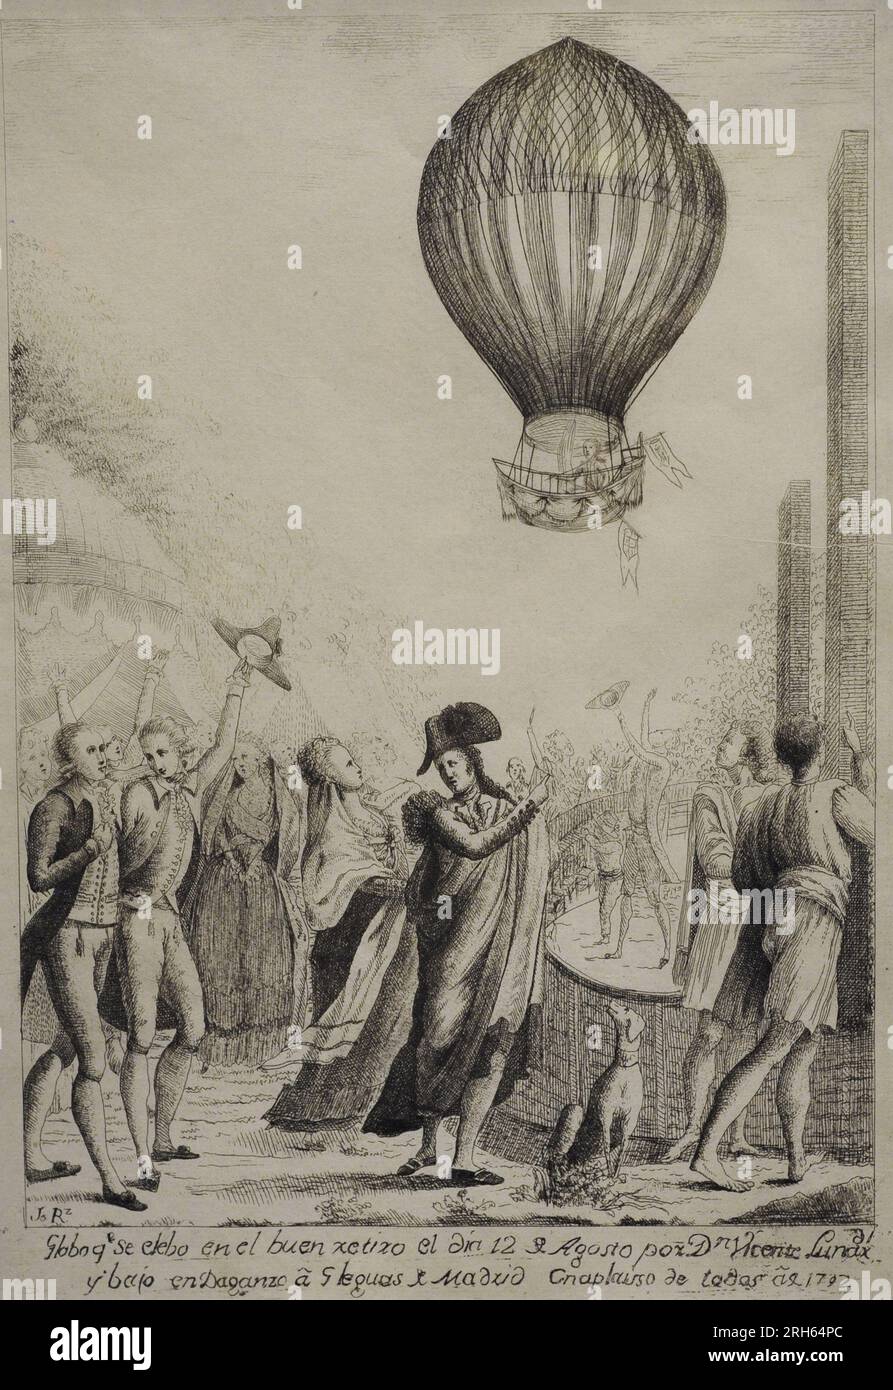 Ascension en montgolfière de Vicente Lunardi (1754-1806) sur le Buen Retiro, 12 août 1792. Gravure sur papier, ca.1793. Musée d'Histoire, Madrid, Espagne. Banque D'Images